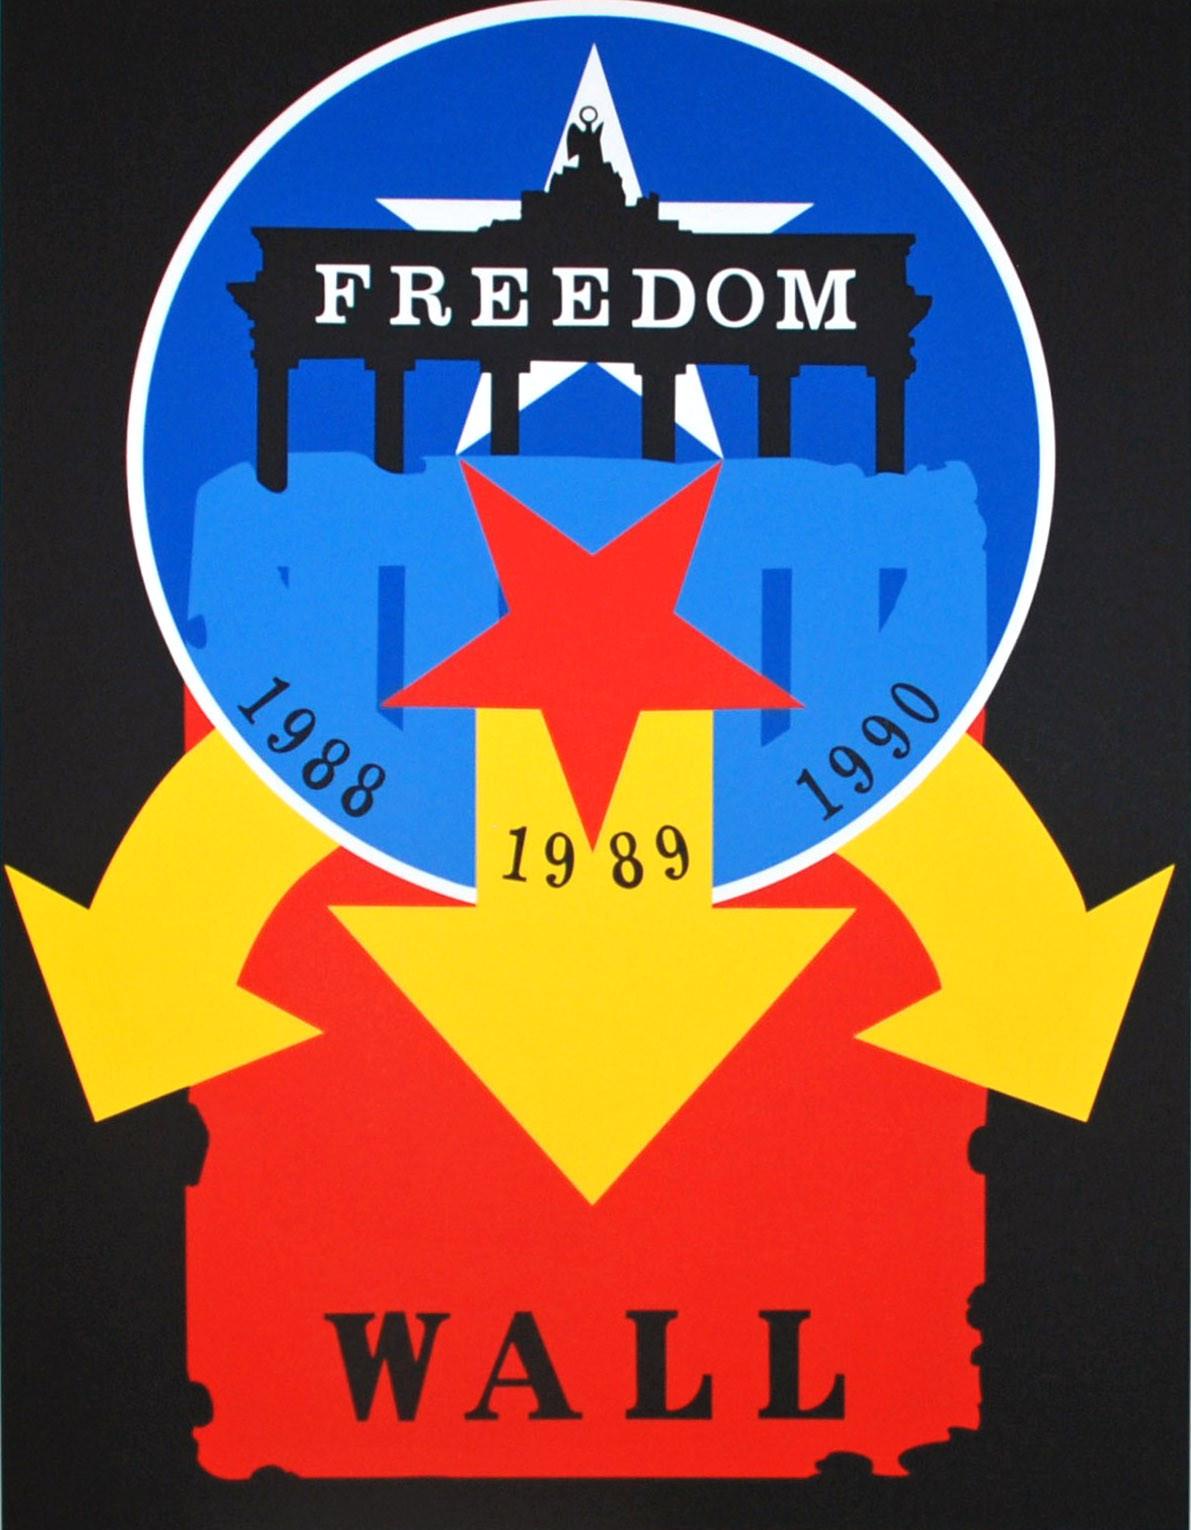 Die Mauer – Print von Robert Indiana